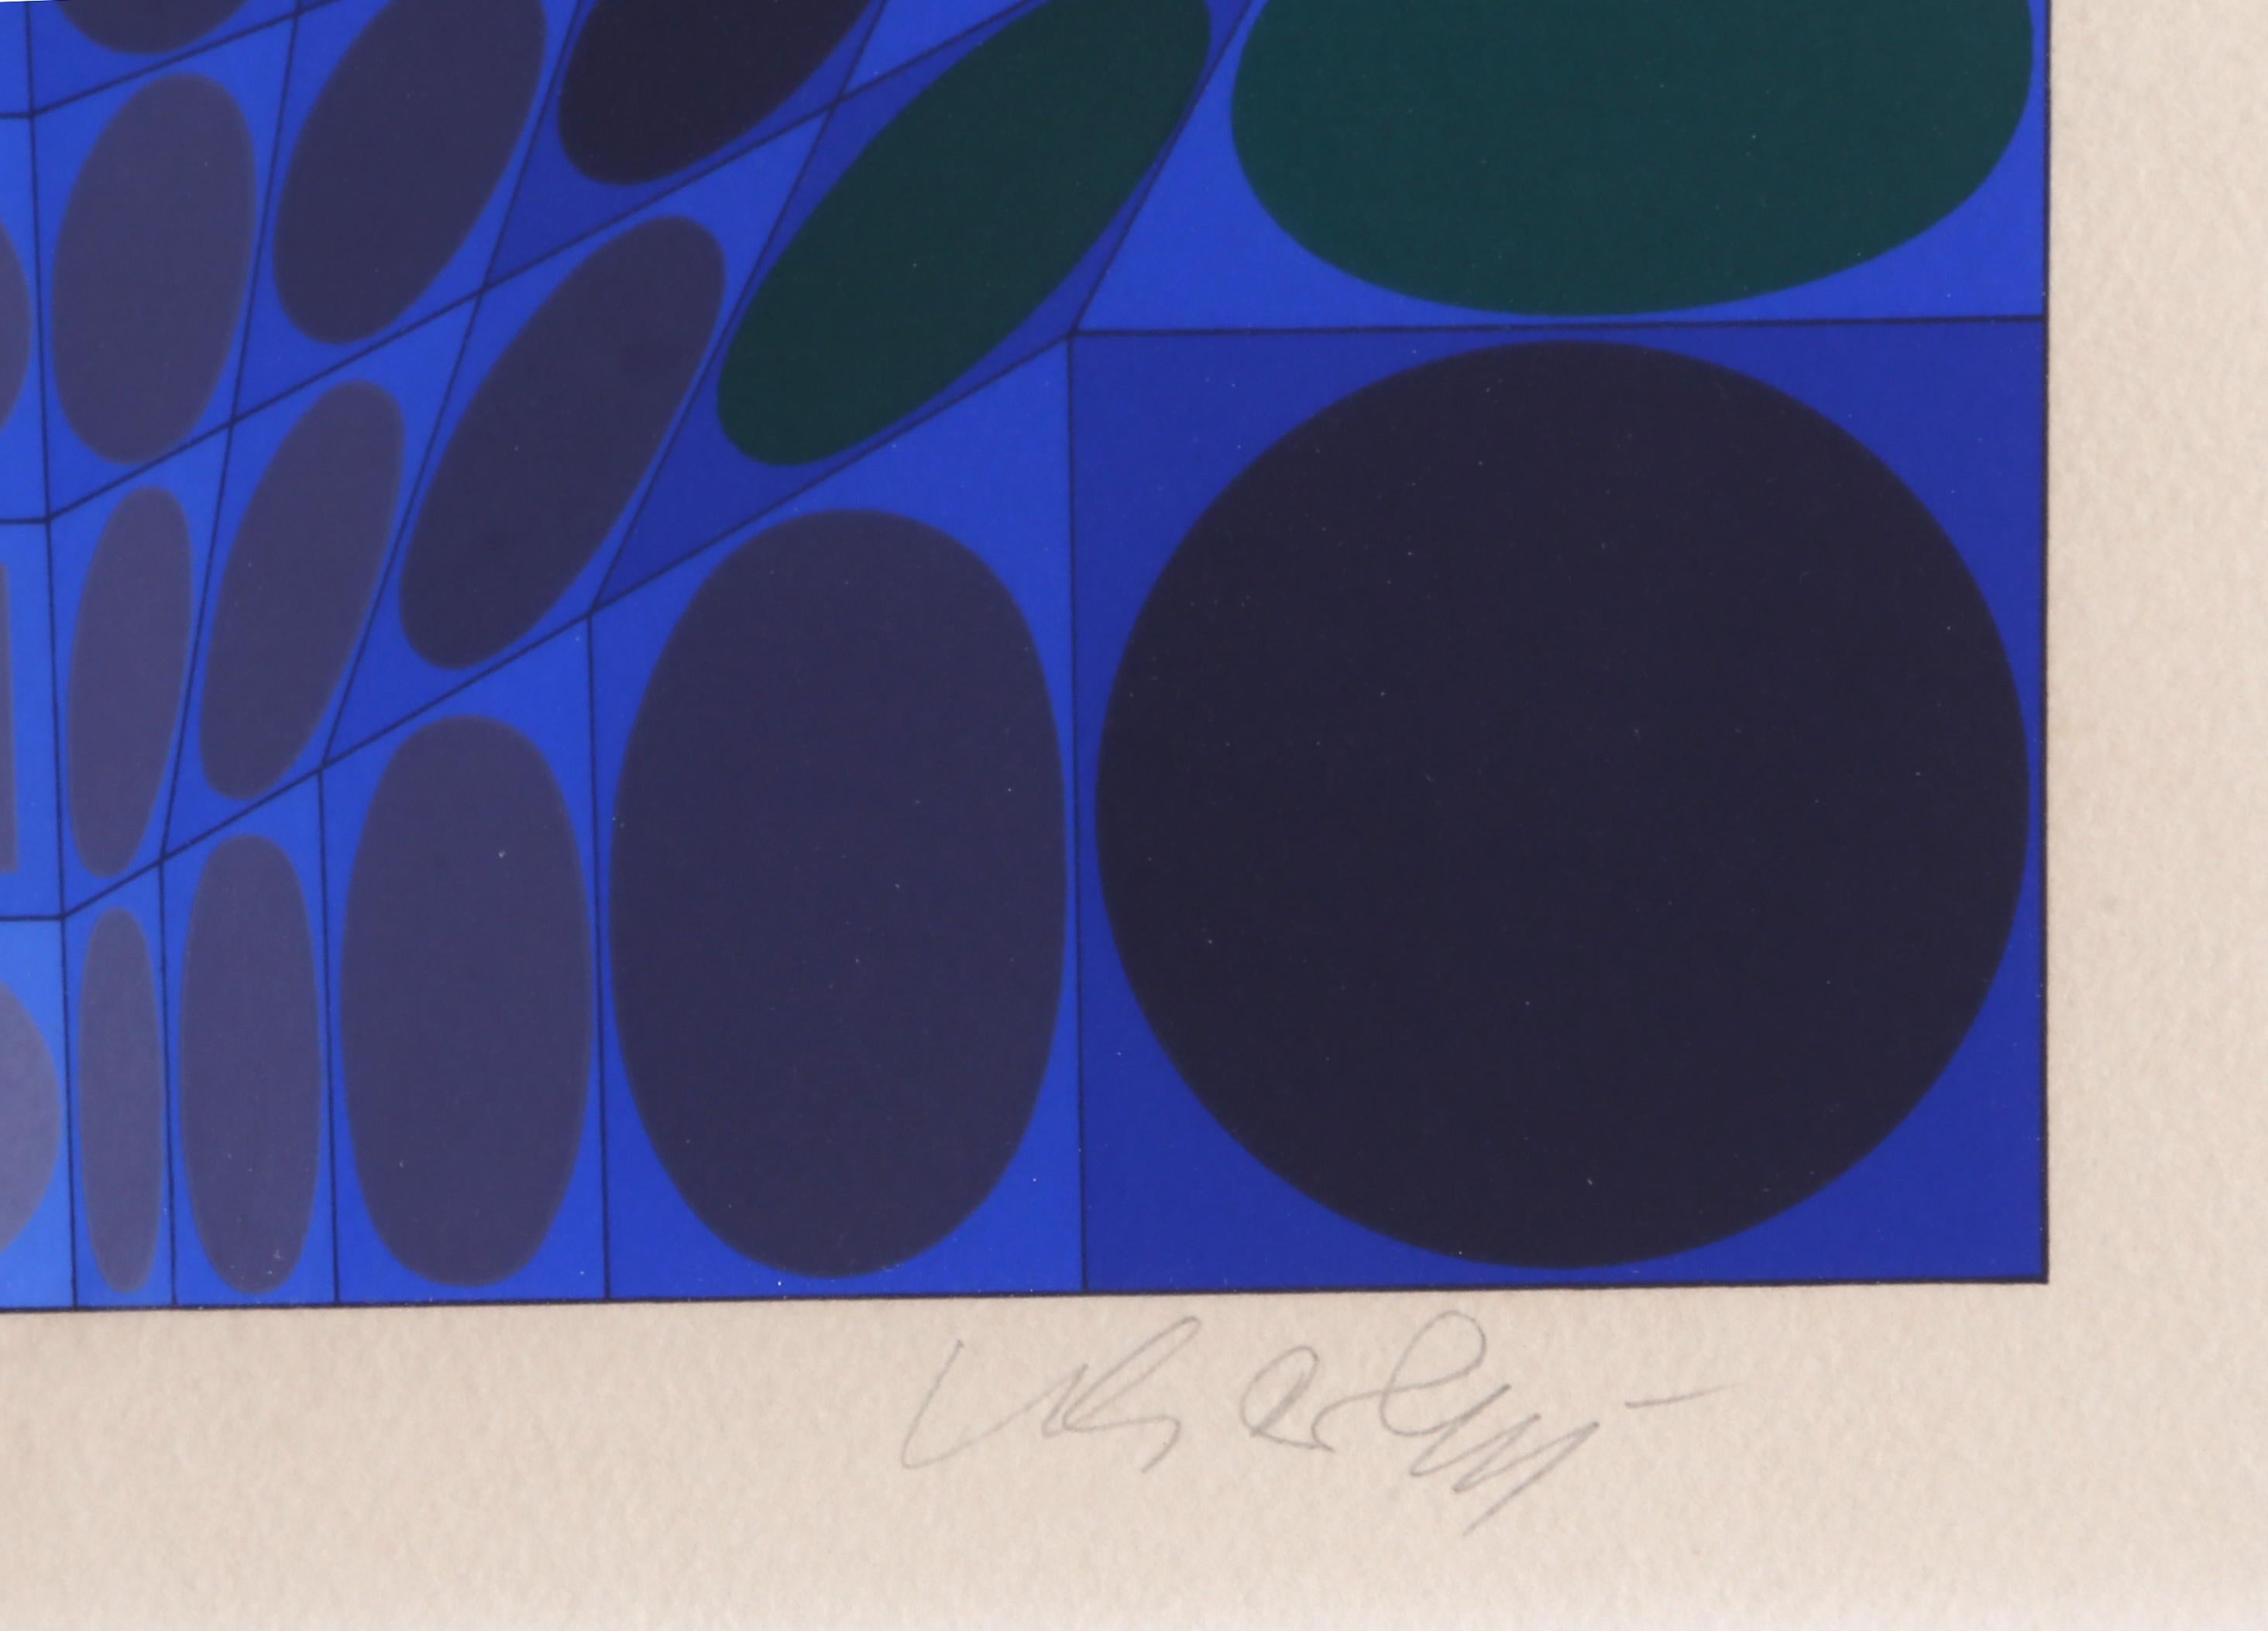 Vega Linearer blauer, OP Art Siebdruck von Vasarely (Op-Art), Print, von Victor Vasarely